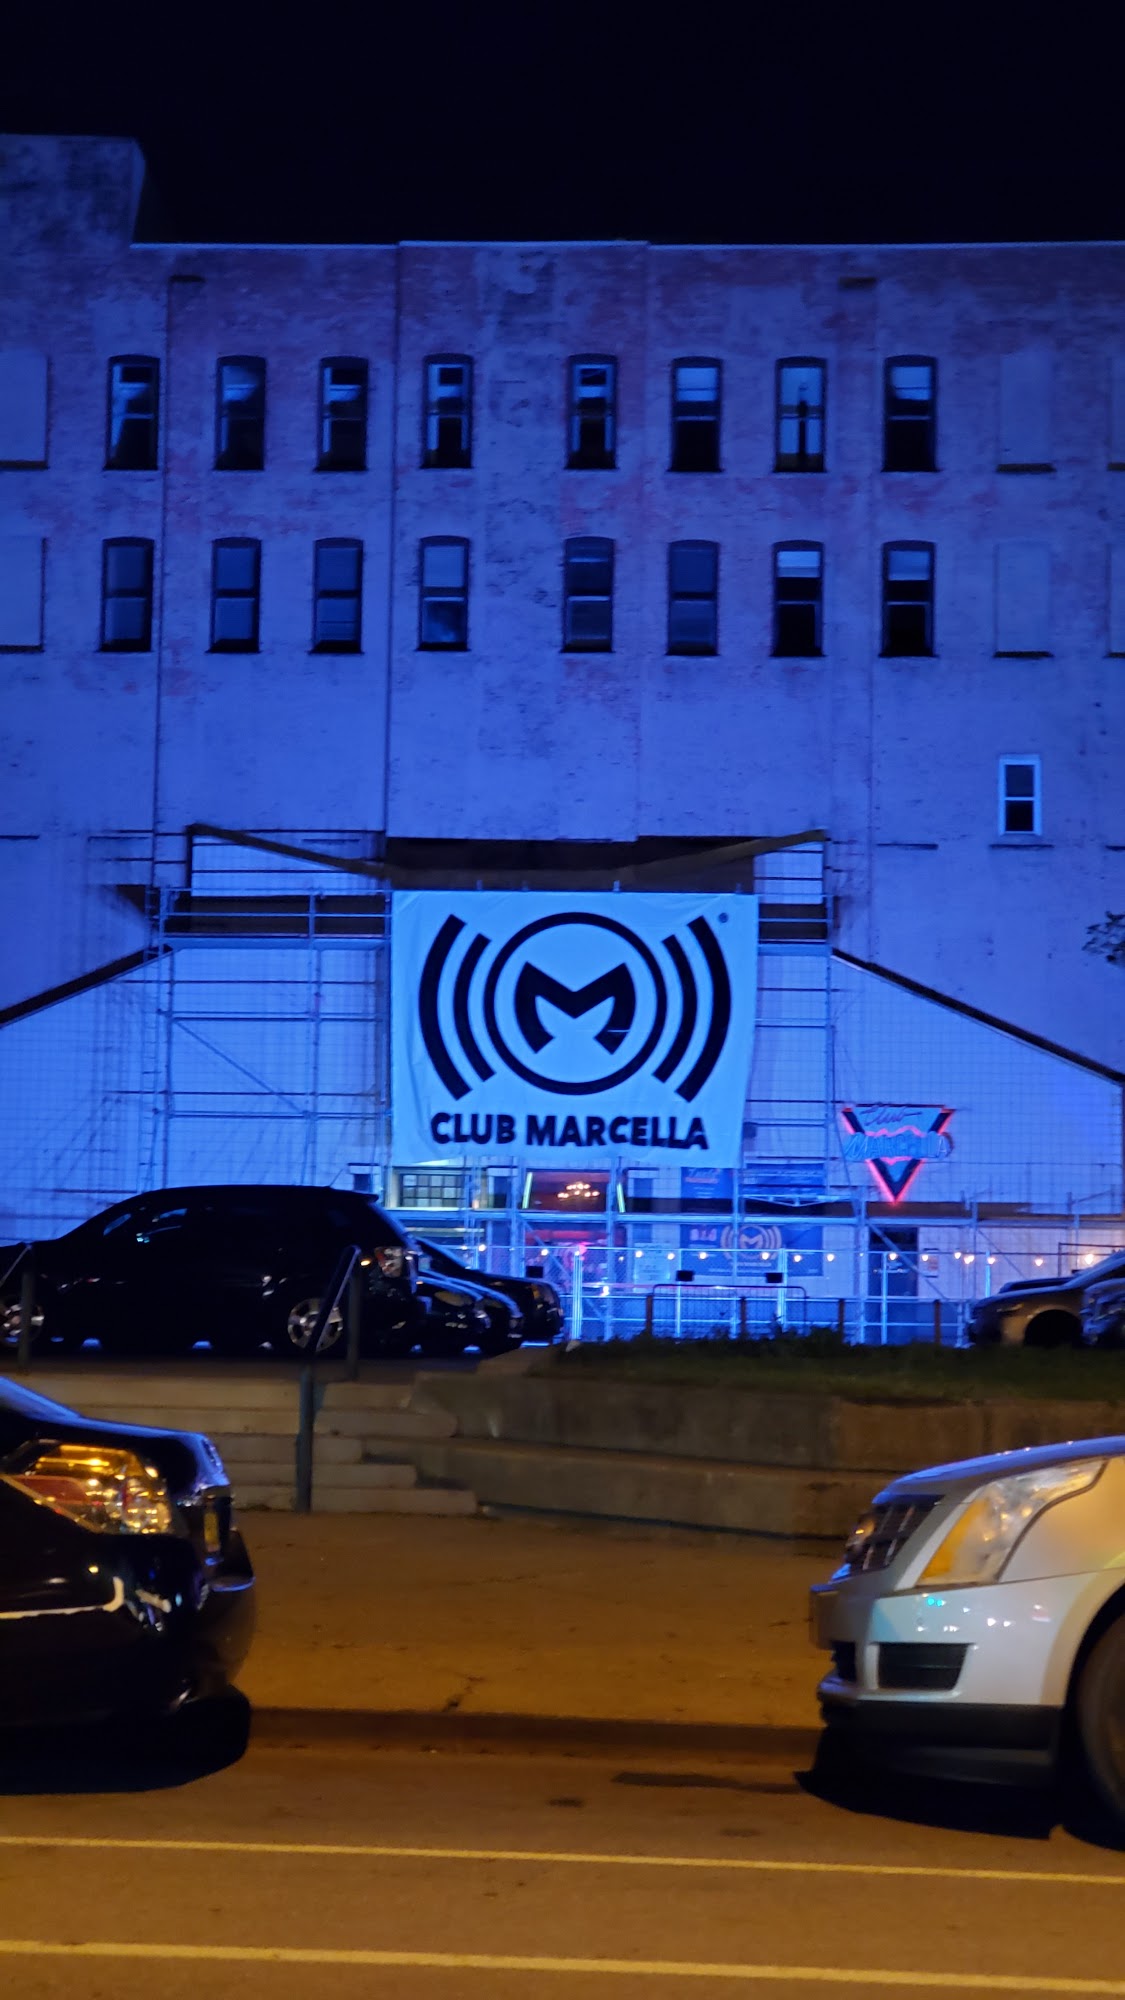 Club Marcella